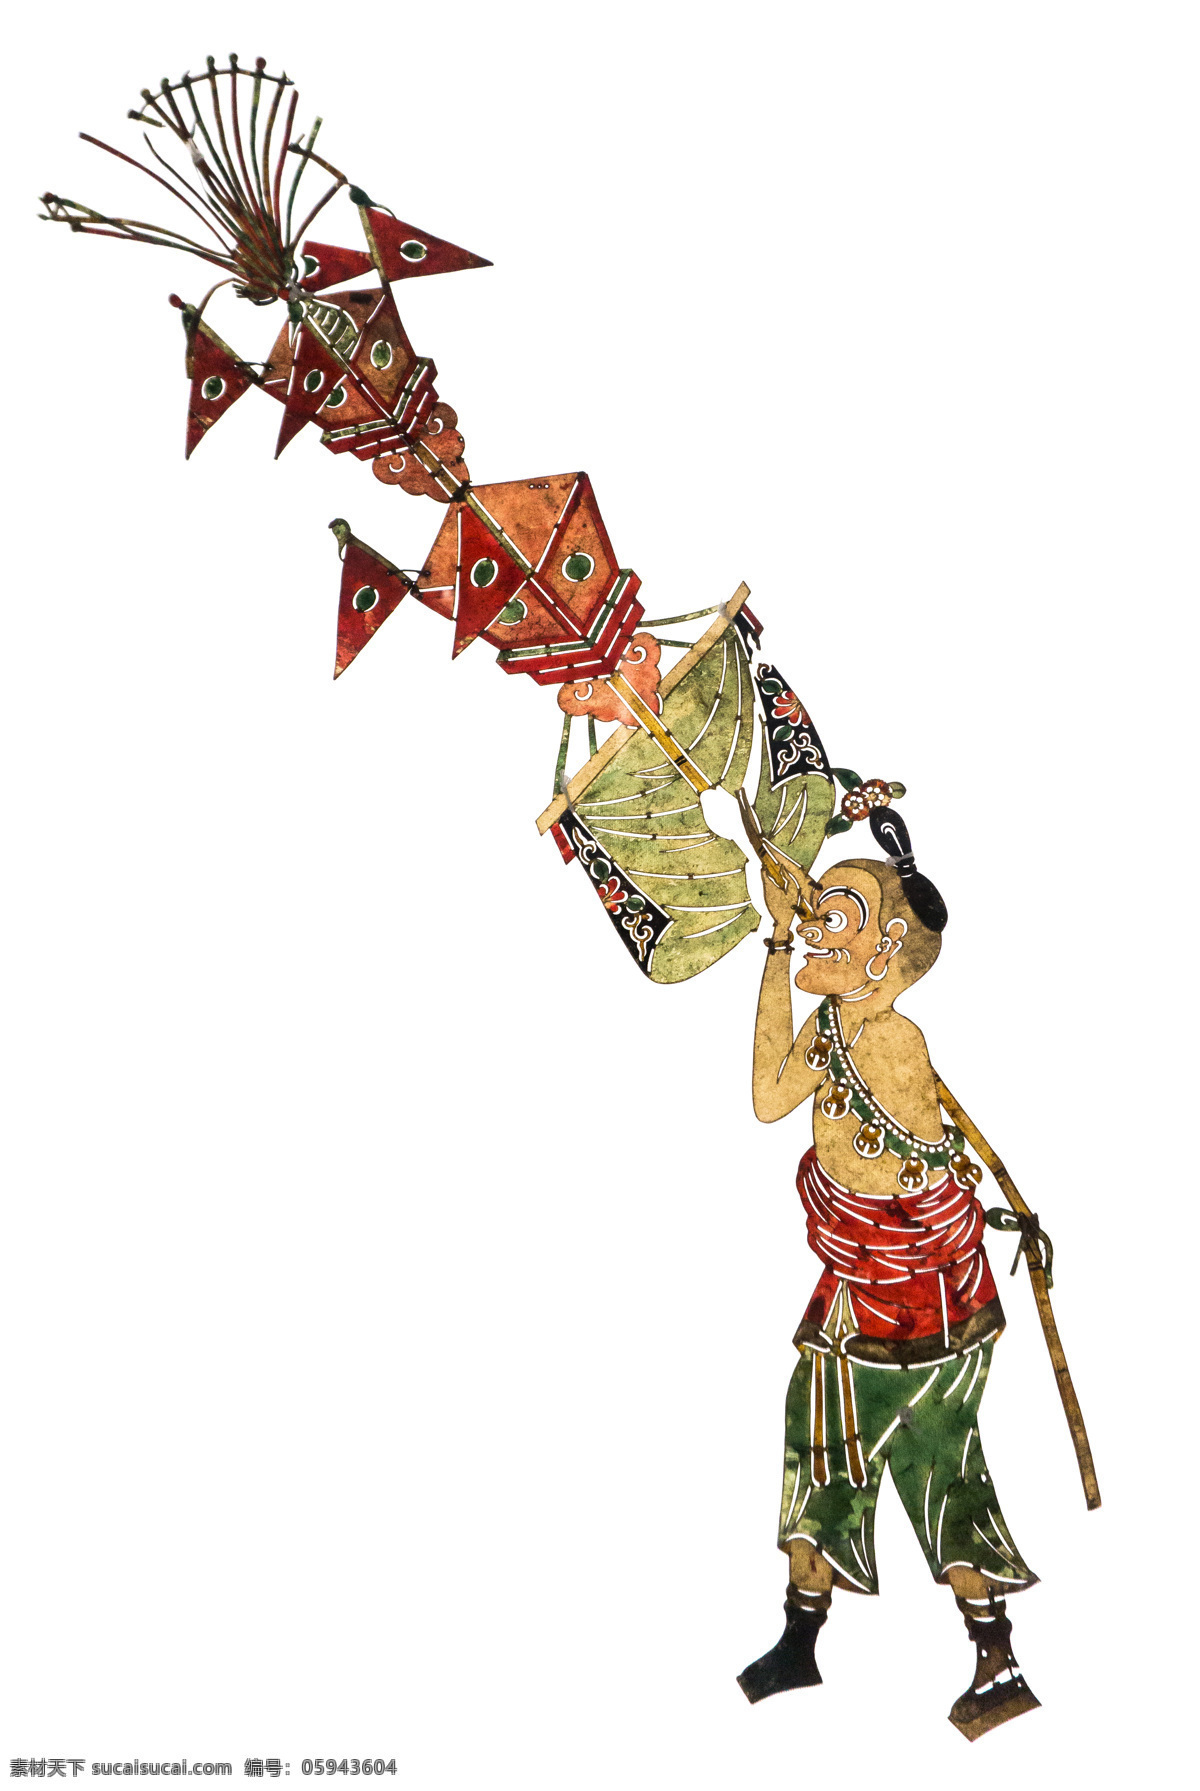 皮影戏 人物 皮影 传统 文化 文化遗产 民族 戏曲 古人 中国风 国粹 影子戏 驴皮影 戏剧艺术 文化艺术 传统文化